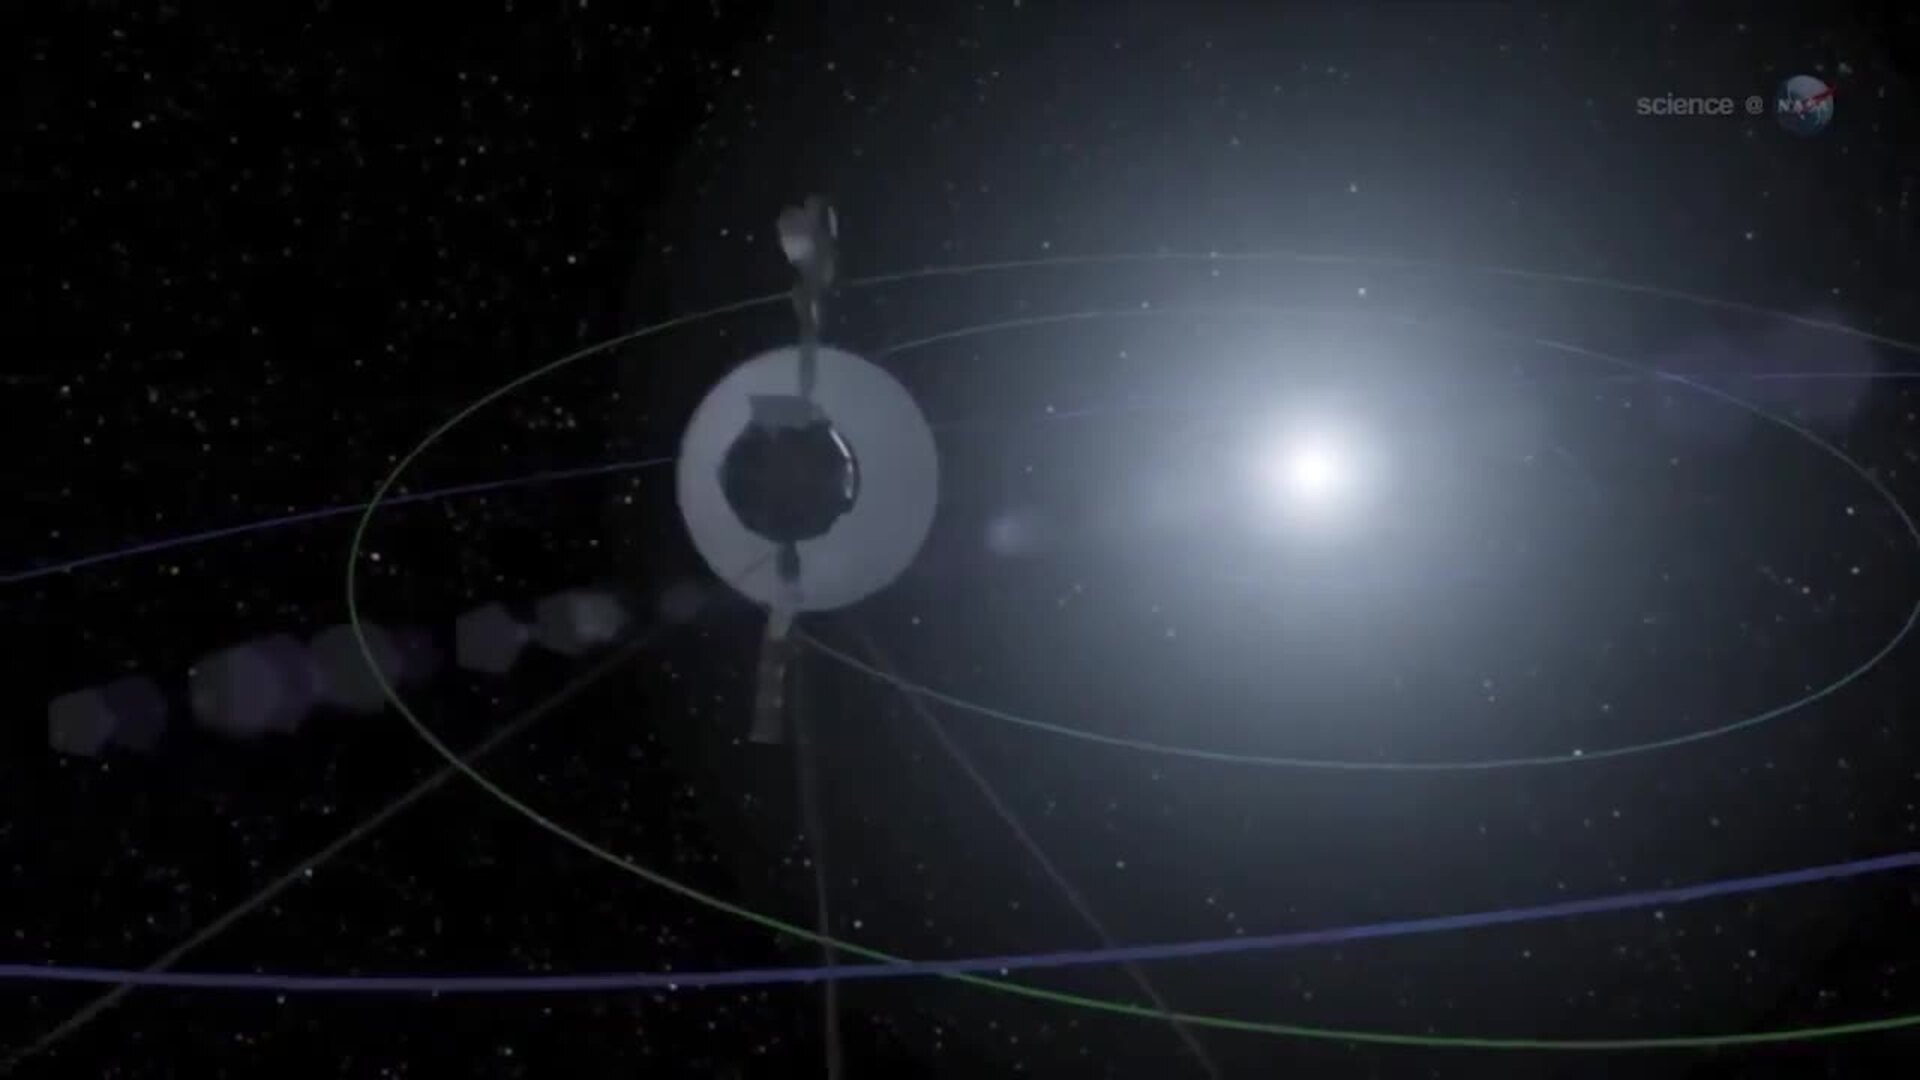 La NASA descifra una señal de Voyager 1 tras meses sin datos